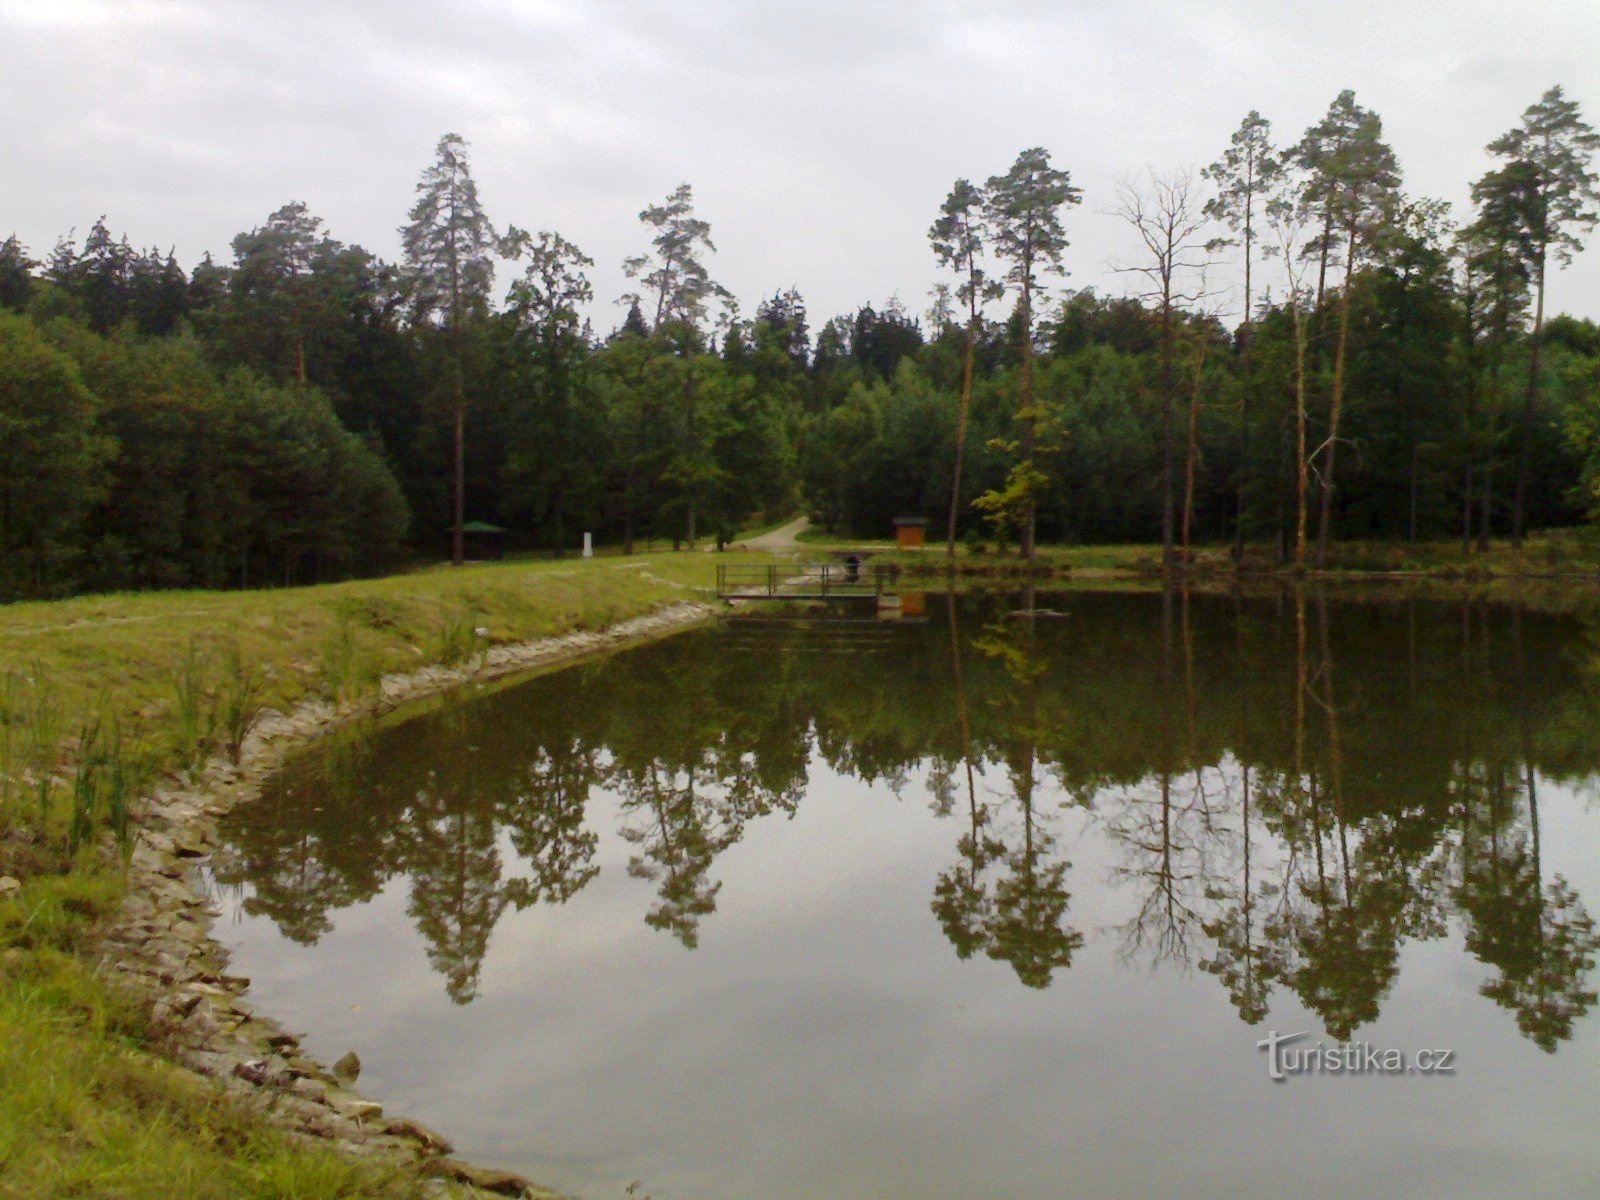 Hồ chứa giữ lại Cesta myslivců - Hradecké lesy